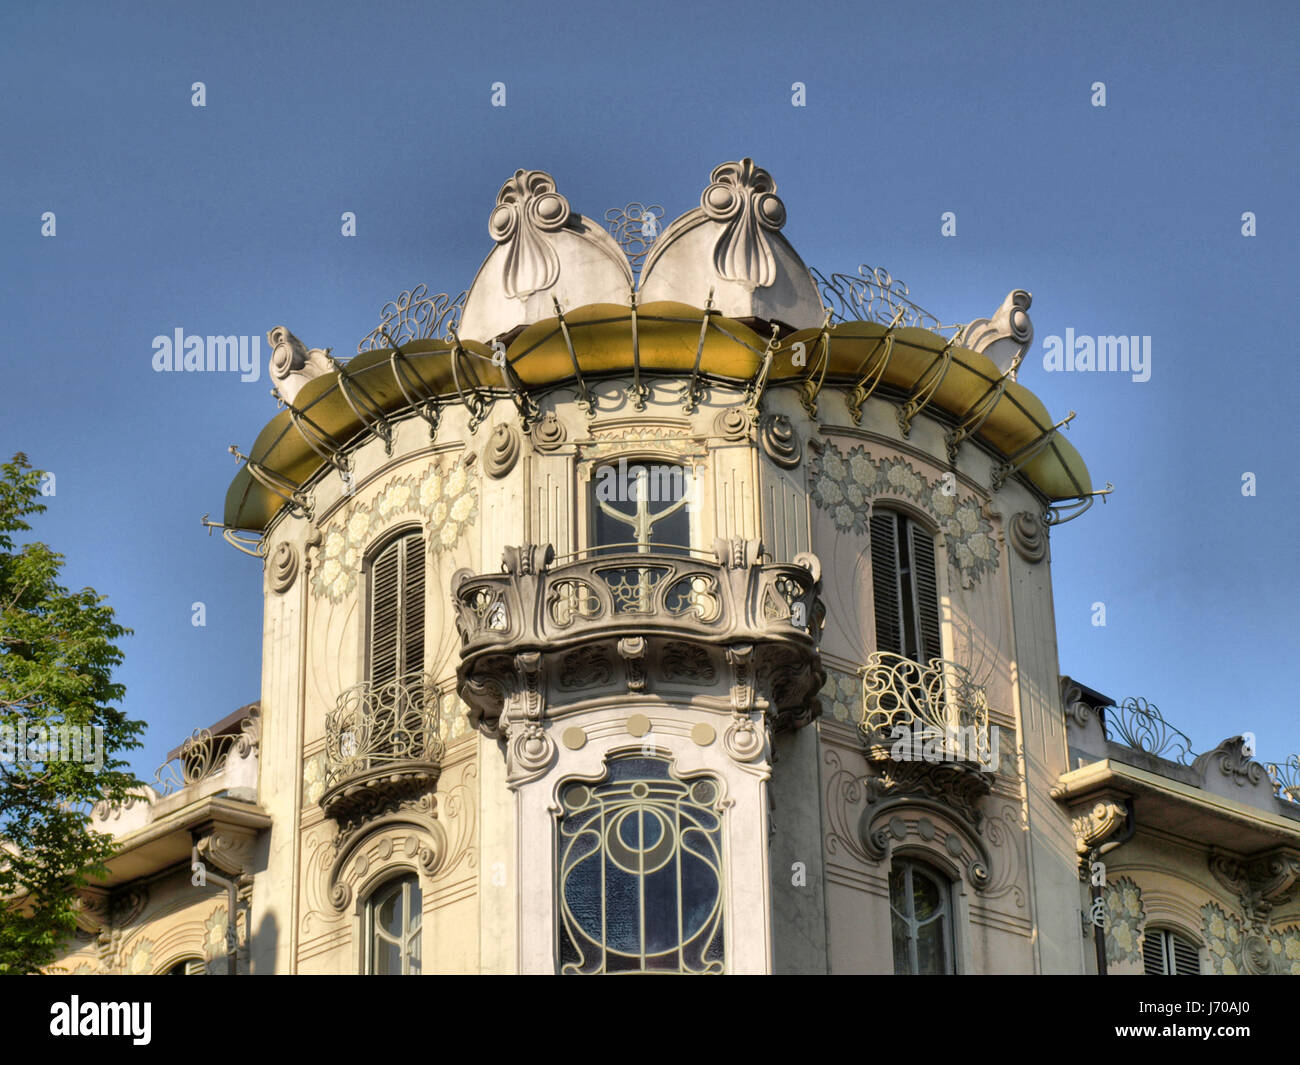 Architettura In Stile Liberty Immagini e Fotos Stock - Alamy